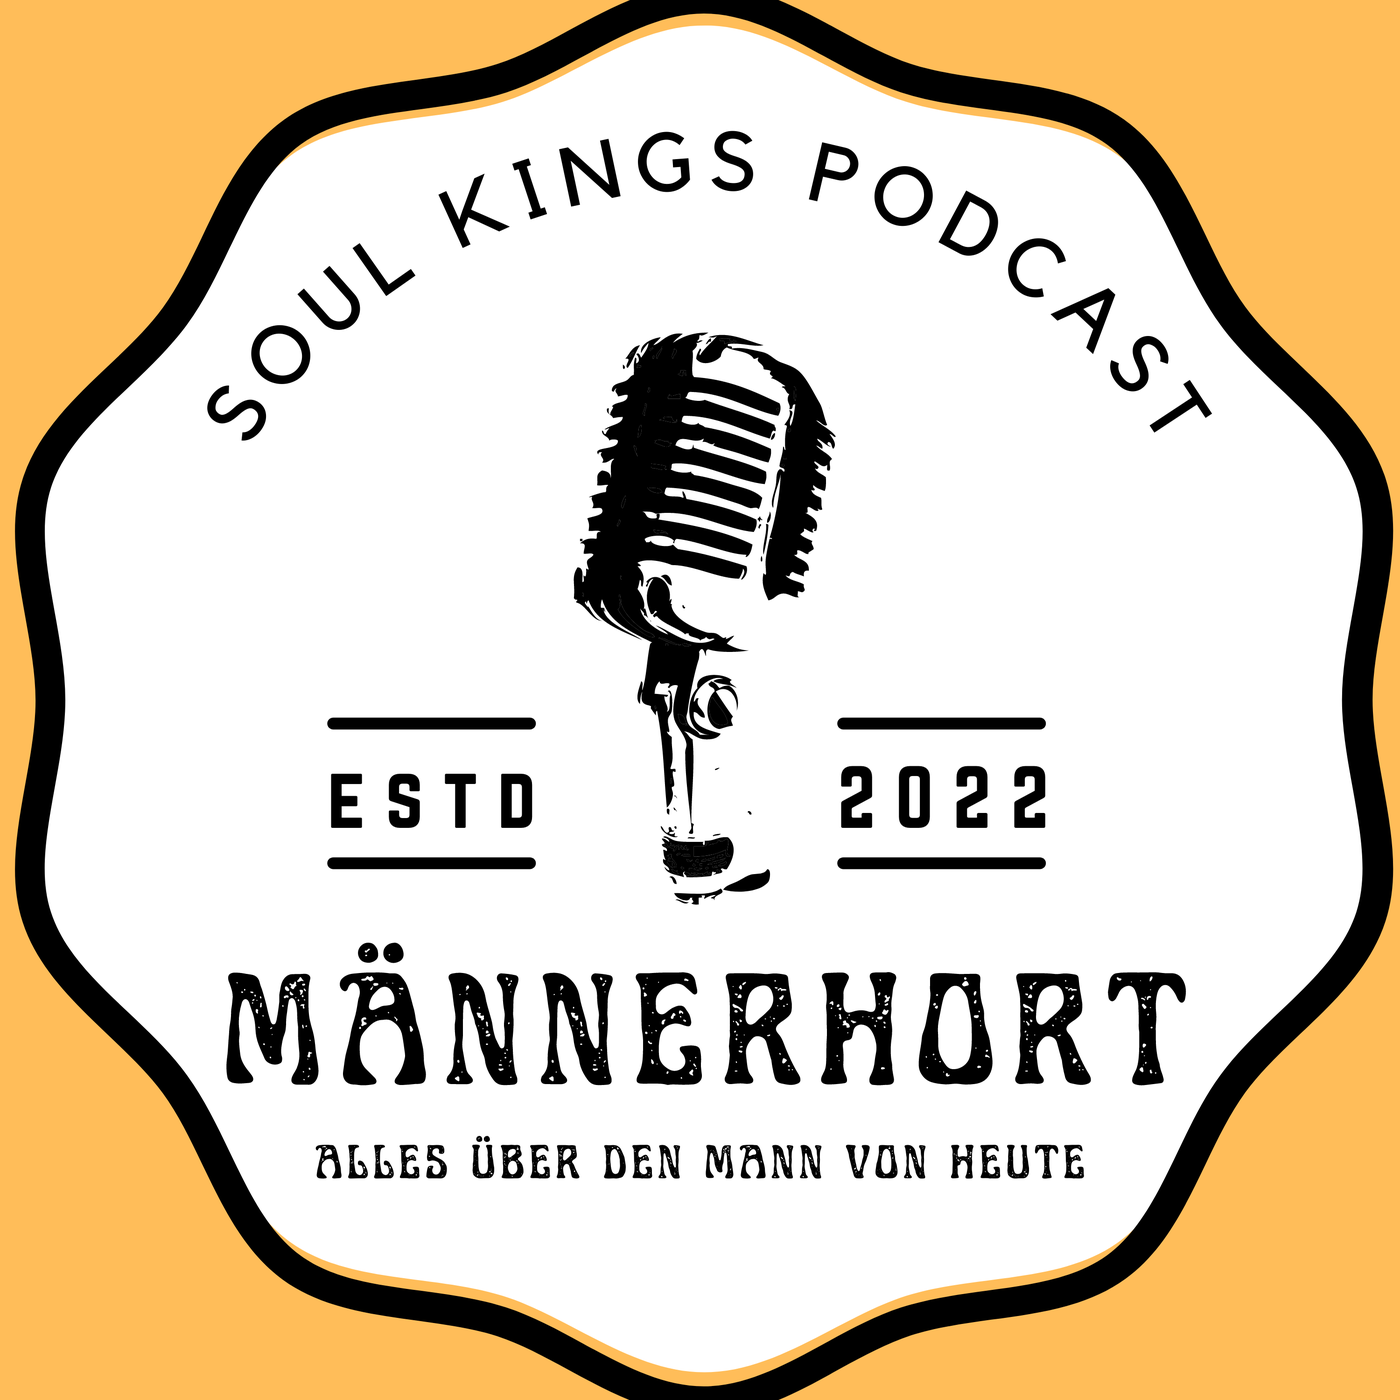 #32 Soul Kings Podcast: Geld ist das 3 wichtigste in deinem Leben | Fortsetzung Interview Bastian Klein